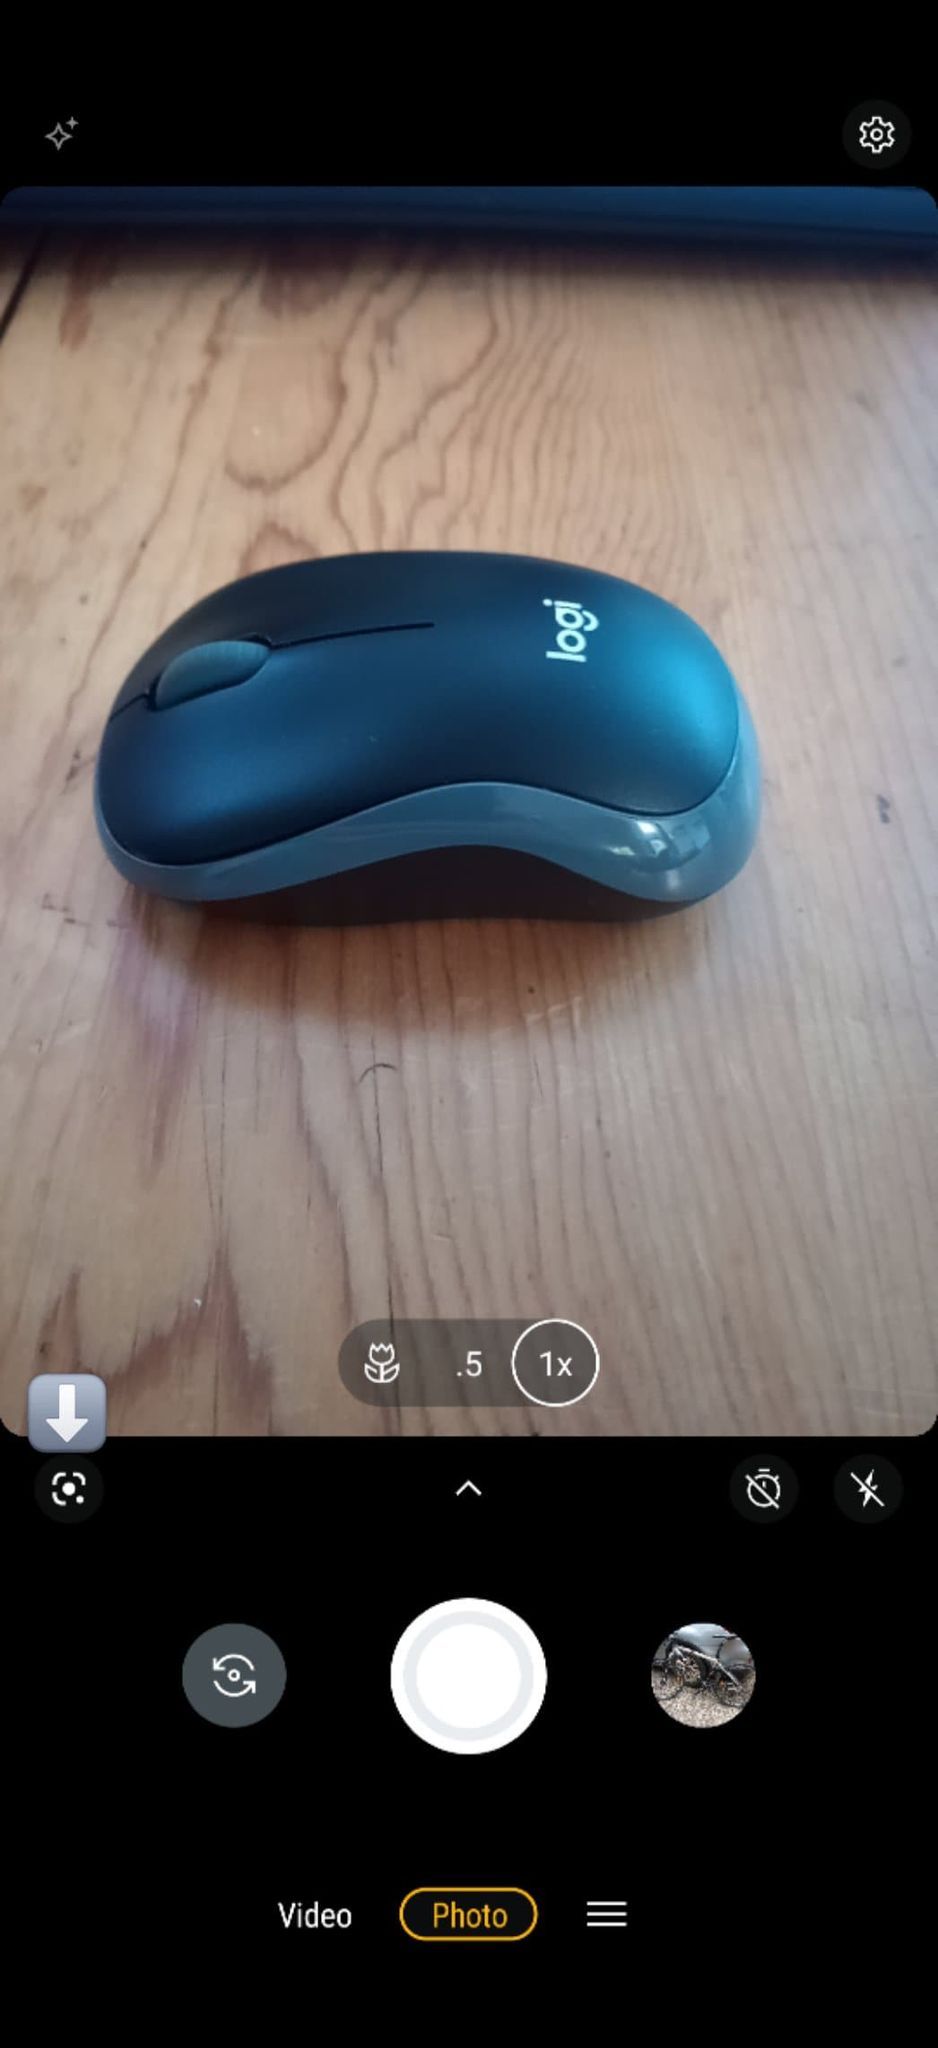 A imagem mostra o aplicativo da câmera Android aberto com um mouse de computador na tela e uma seta apontando para o ícone do Google Lens no canto inferior esquerdo.